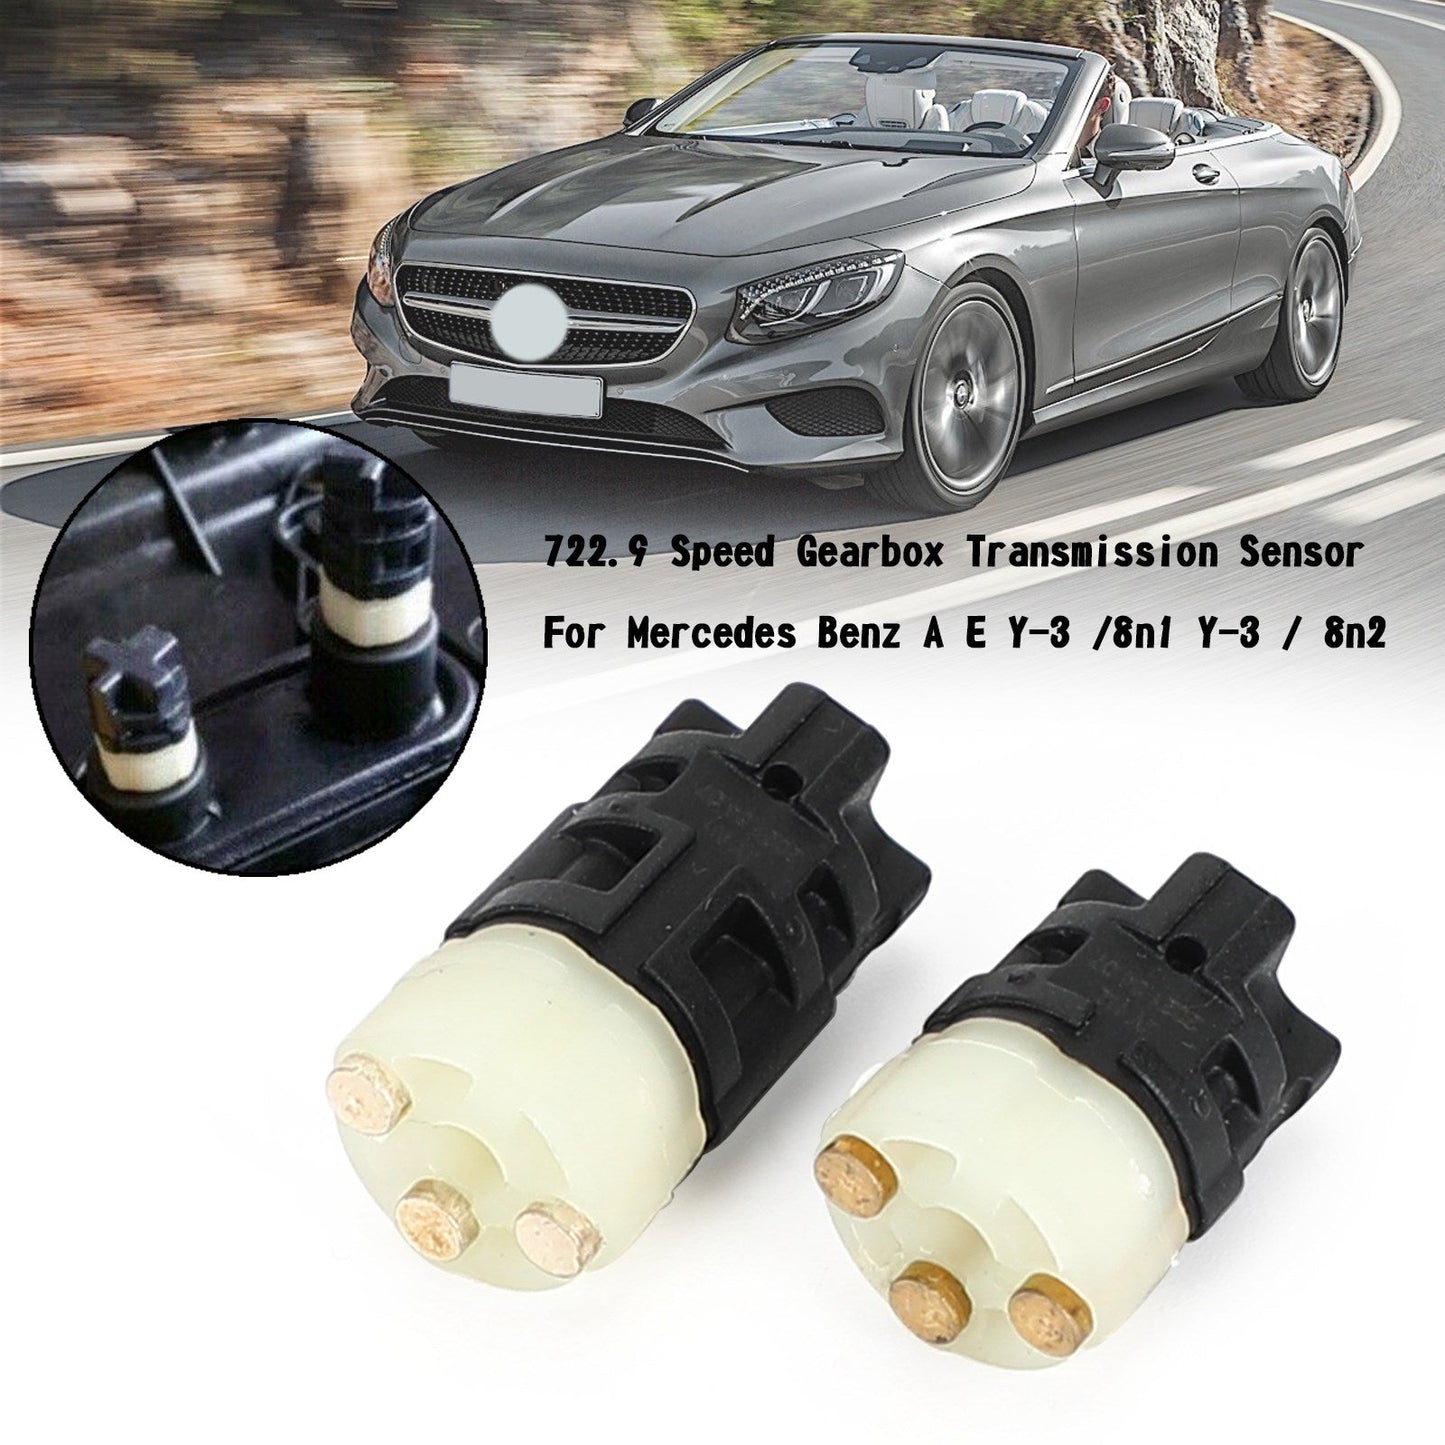 722.9 Speed Gearbox Transmission Sensor Y-3 /8N1 Y-3 / 8N2 For Mercedes Benz A E